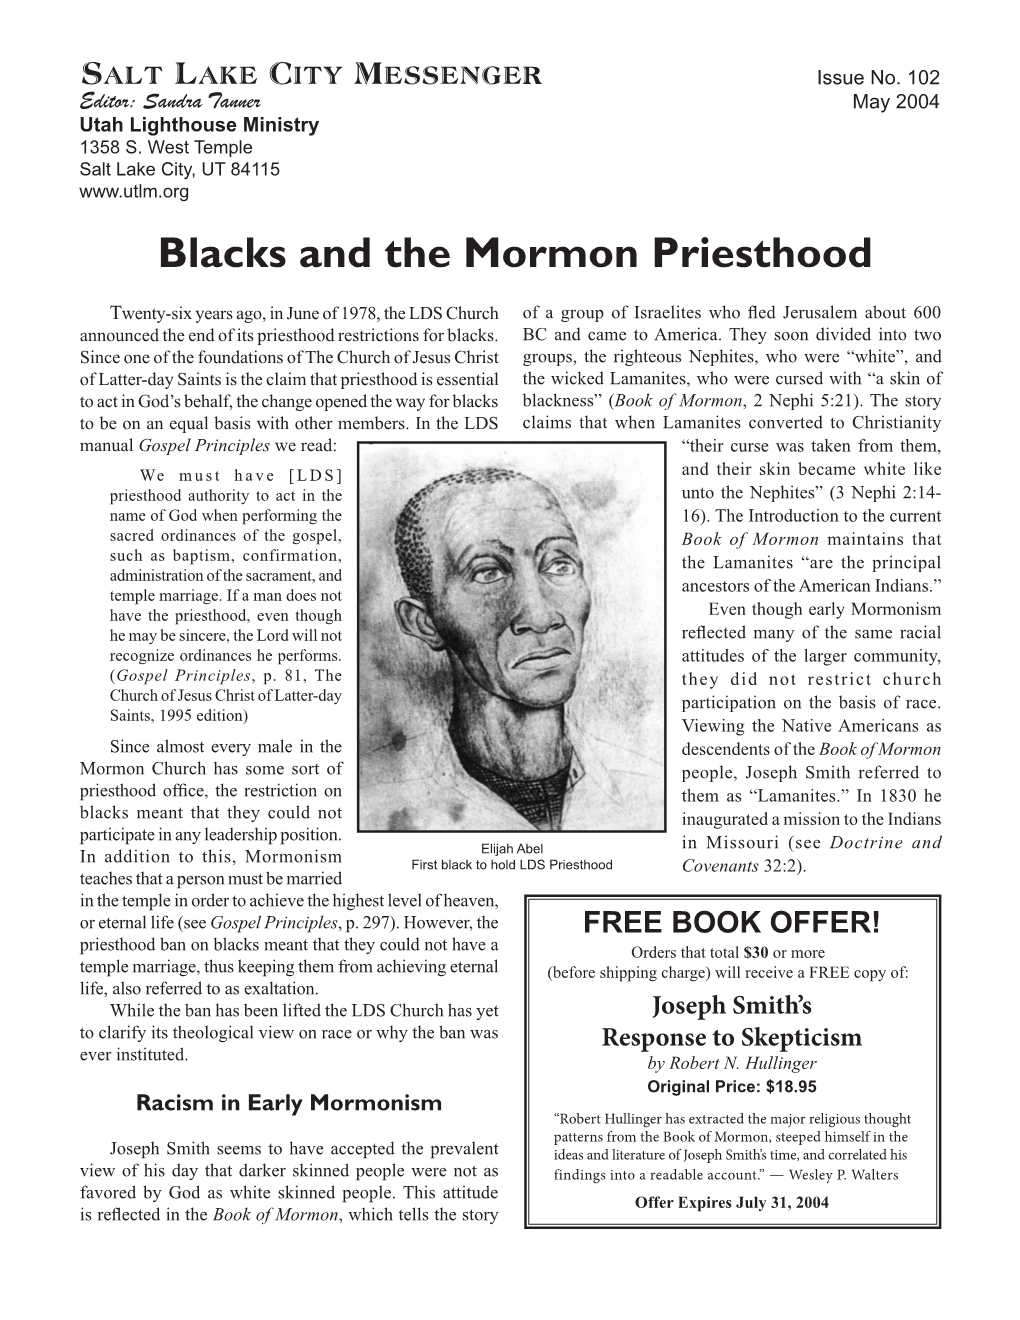 102 Salt Lake City Messenger: Blacks and the Mormon Priesthood